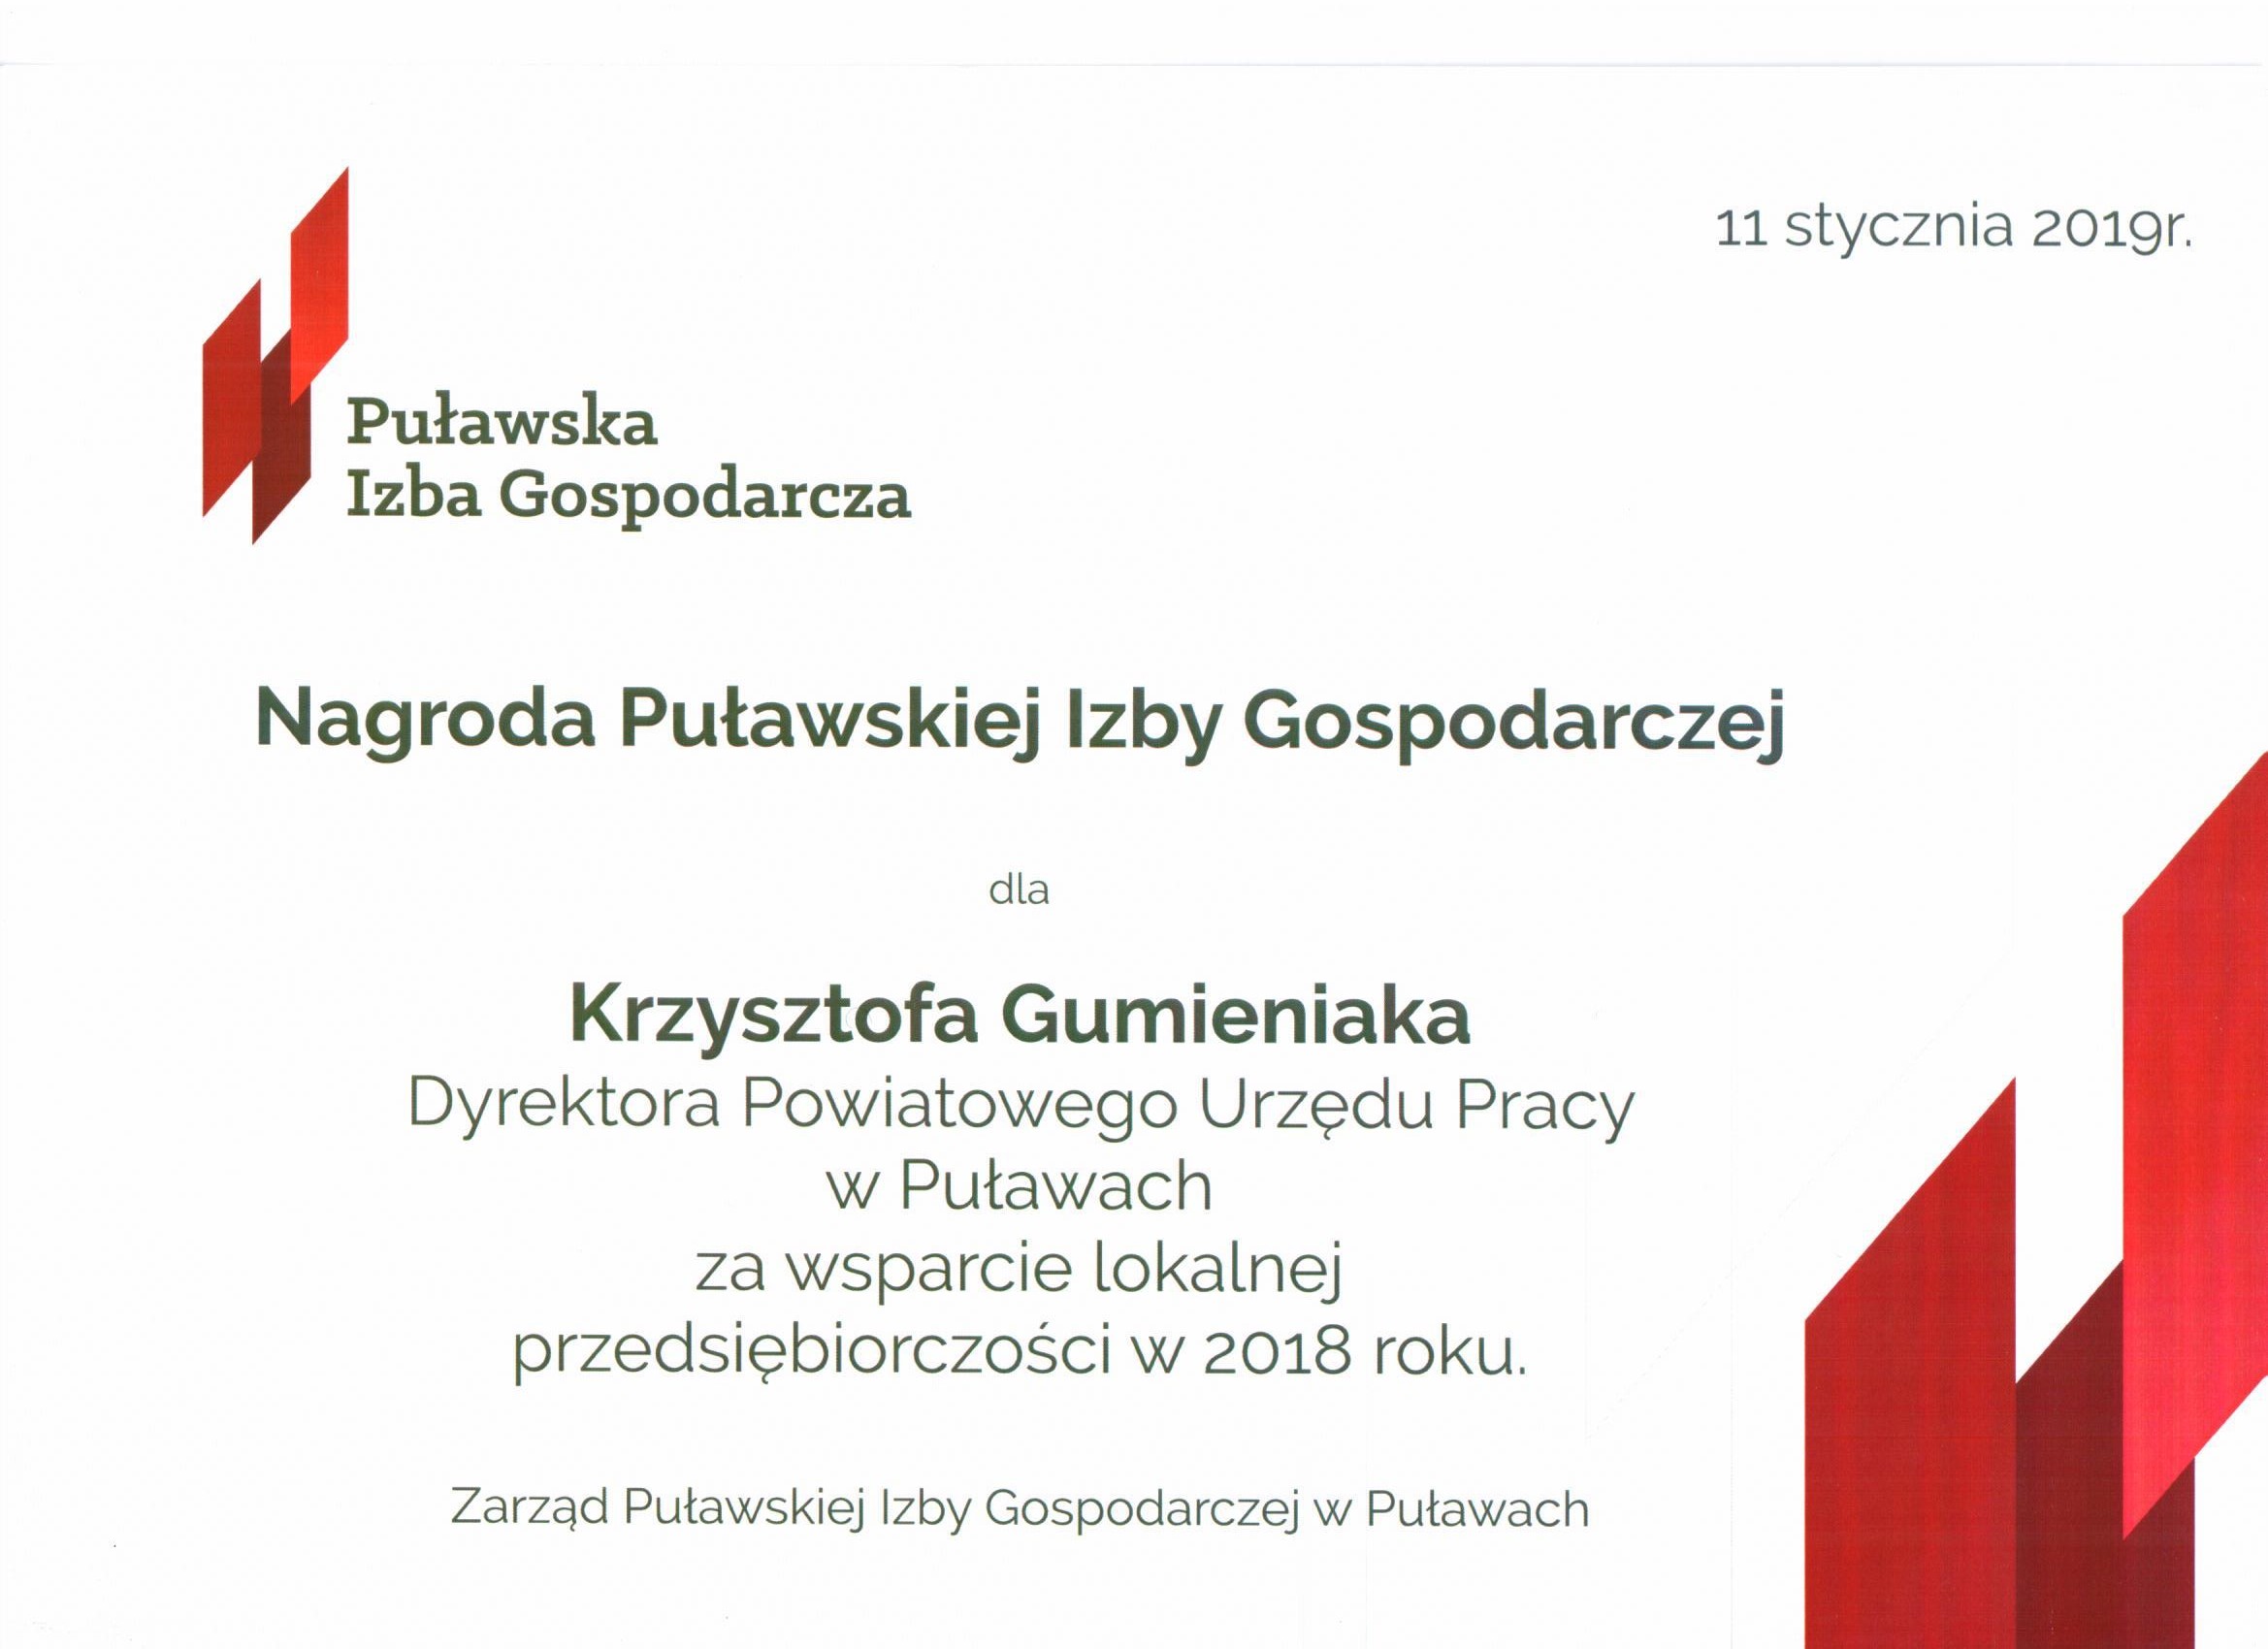 Nagroda Puławskiej Izby Gospodarczej dla Krzysztofa Gumieniaka Dyrektora Powiatowego Urzędu Pracy w Puławach za wsparcie lokalnej przedsiębiorczości w 2018 r.